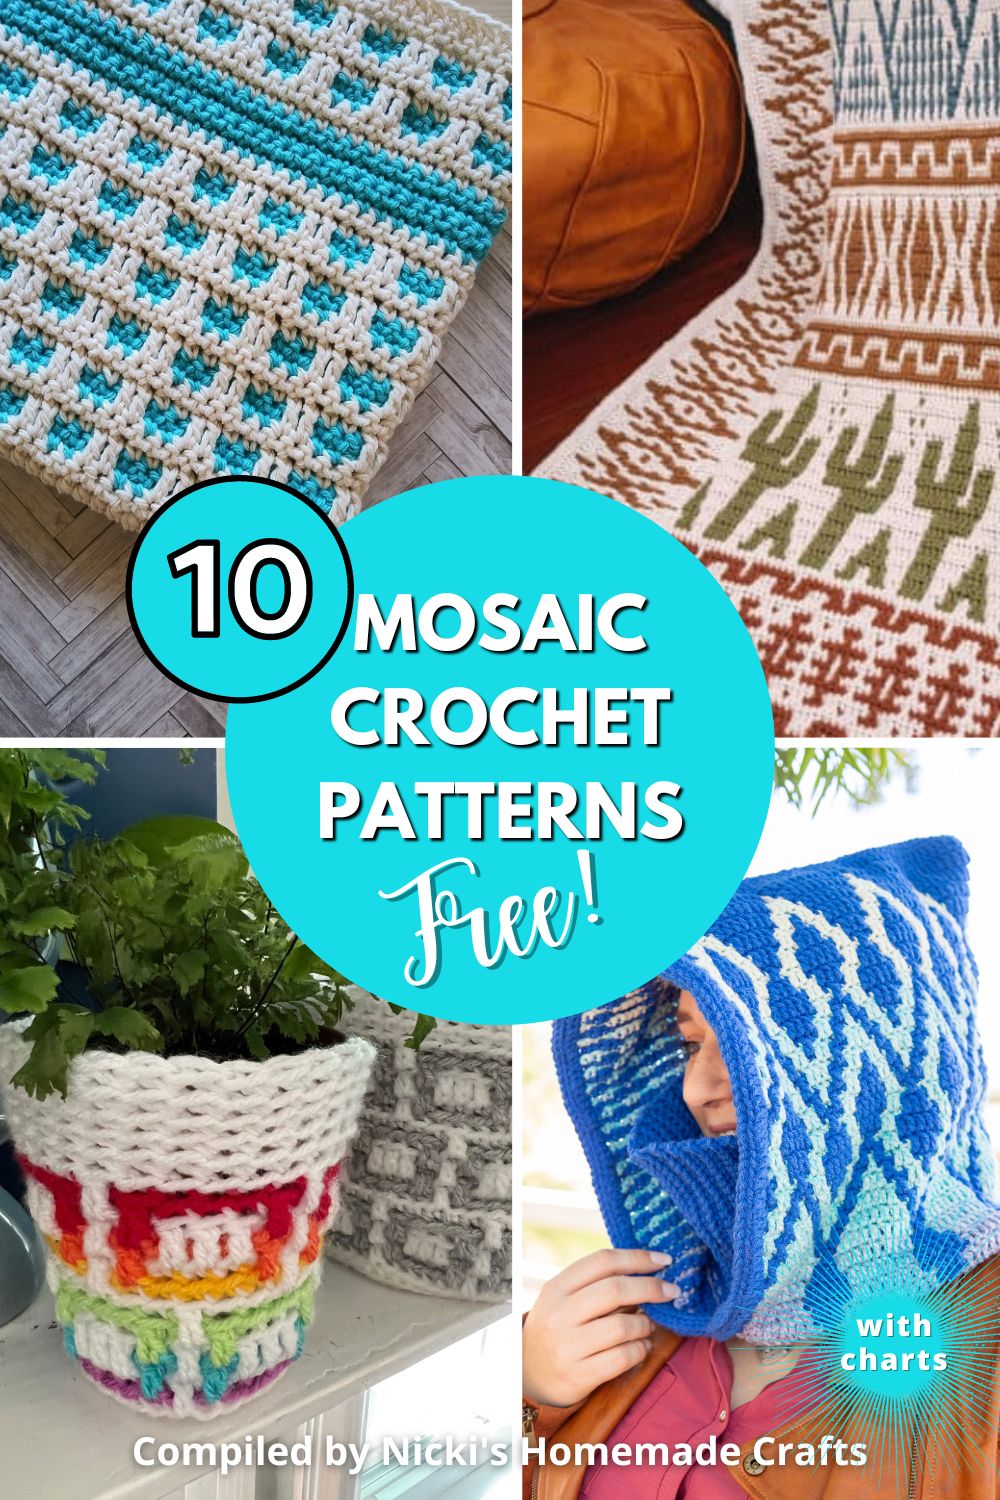 10 Beautiful Free Mosaic Crochet Patterns with Charts - Nicki's ...